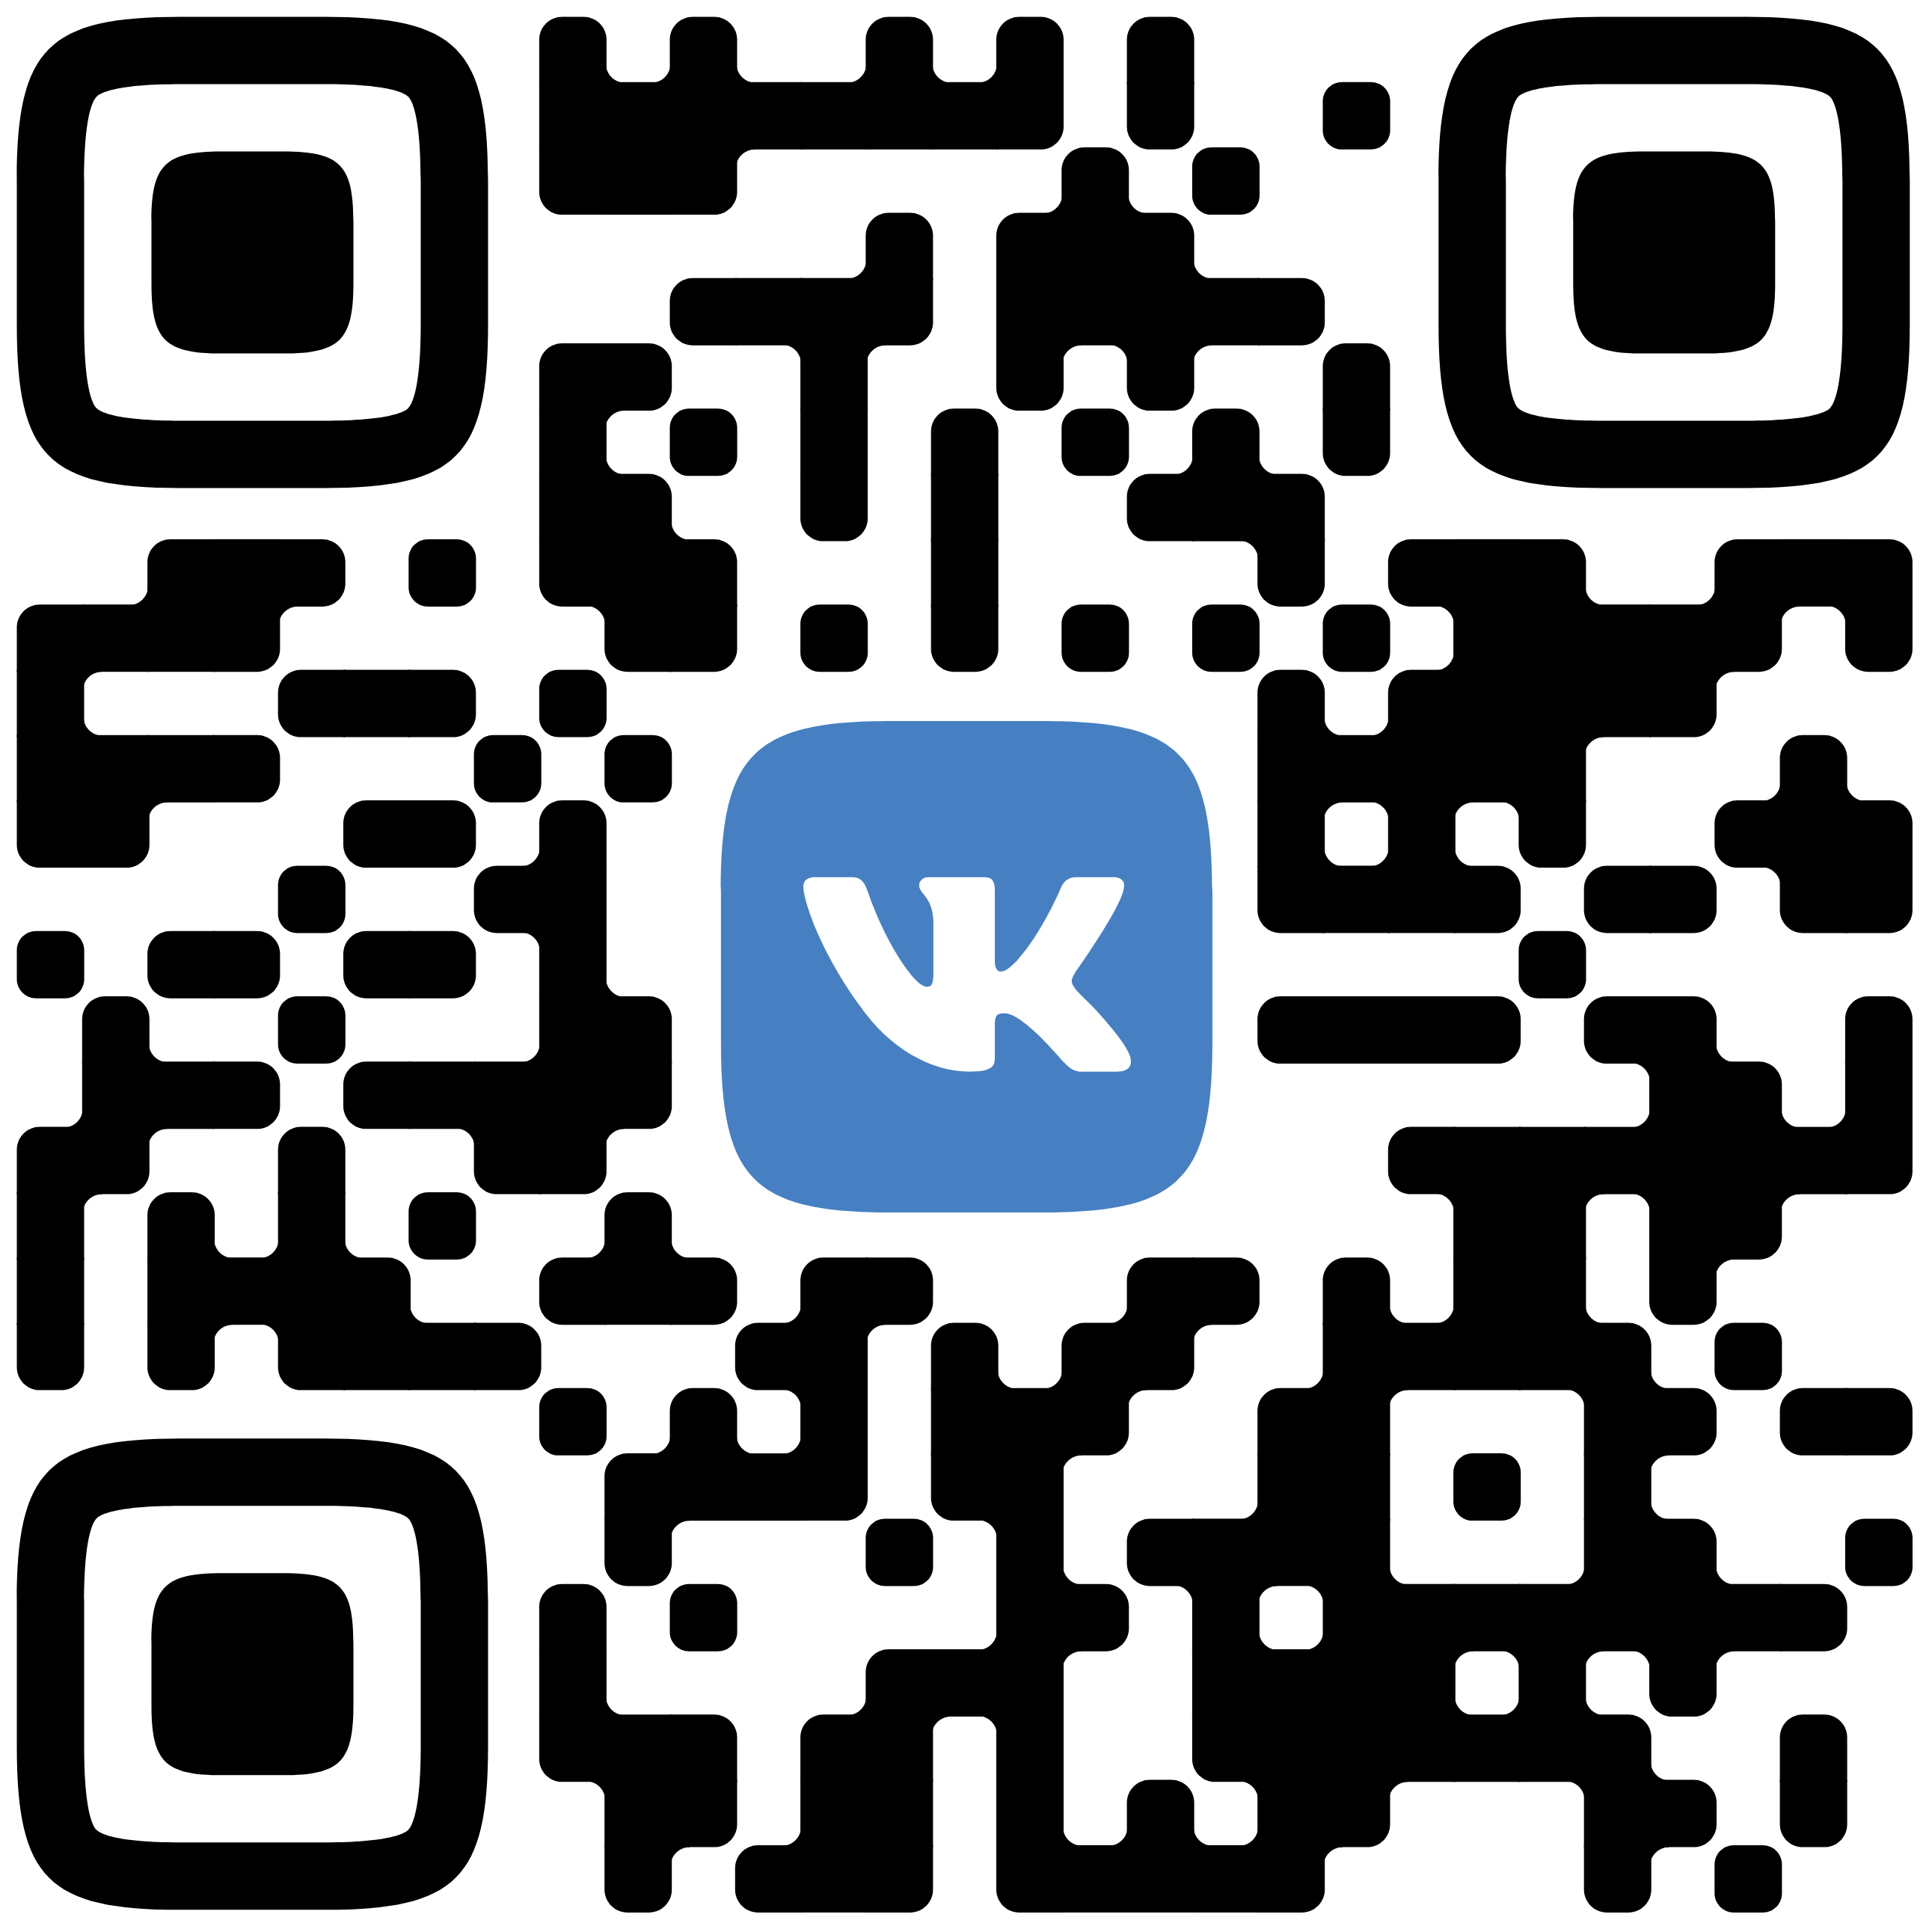 Vkontakte Logo PNG Photo Image